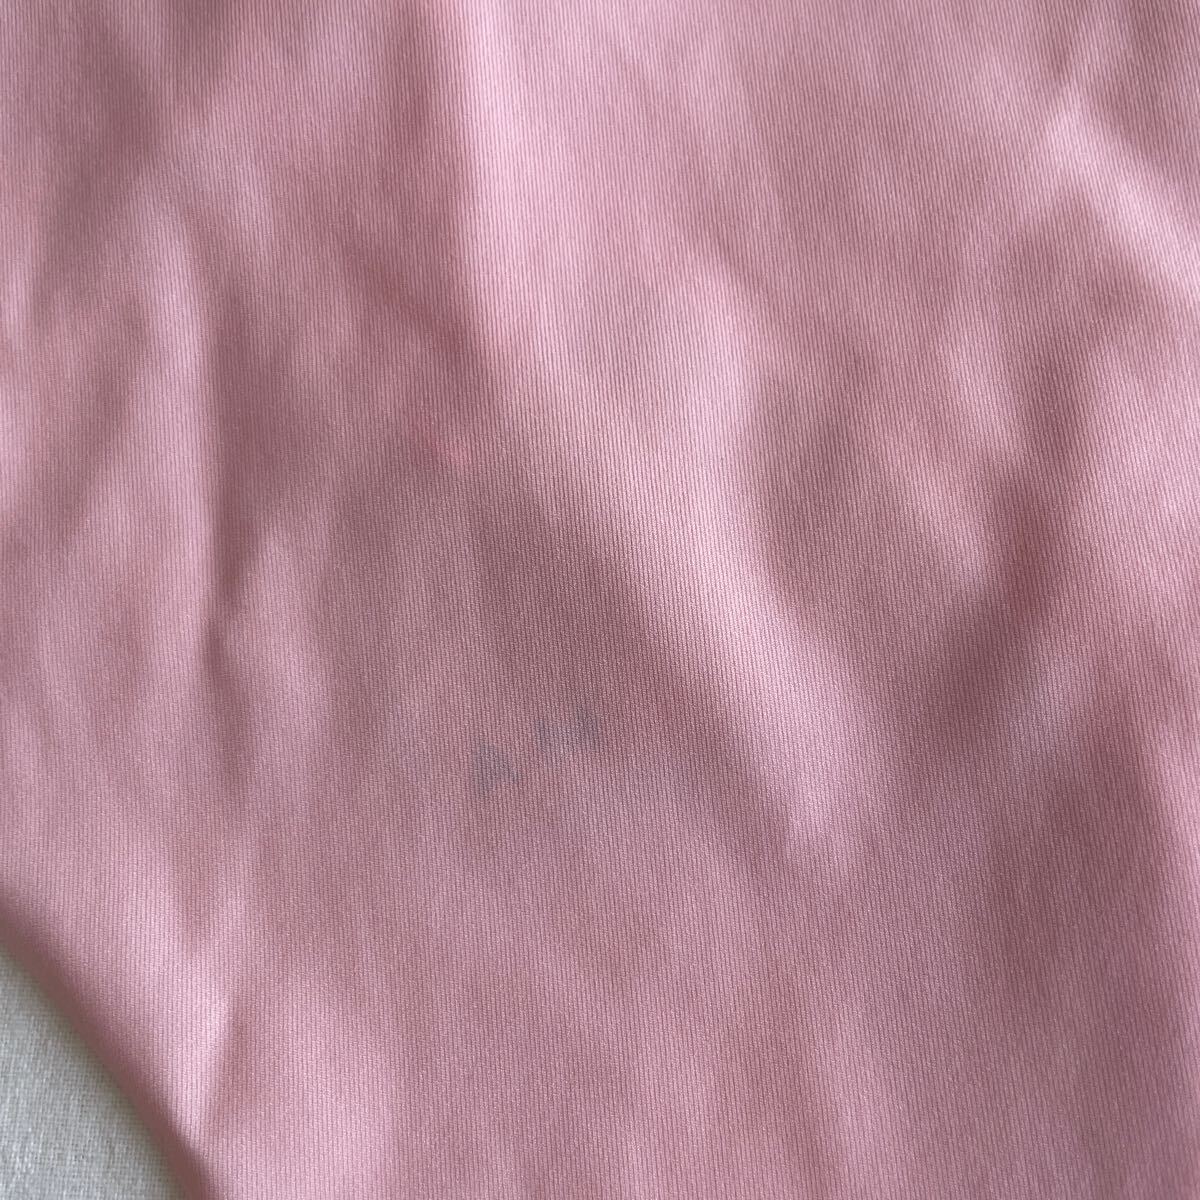 アモスタイルトリンプショーツL ピンク 単品 薄い レディース下着パンティl 匿名配送の画像5